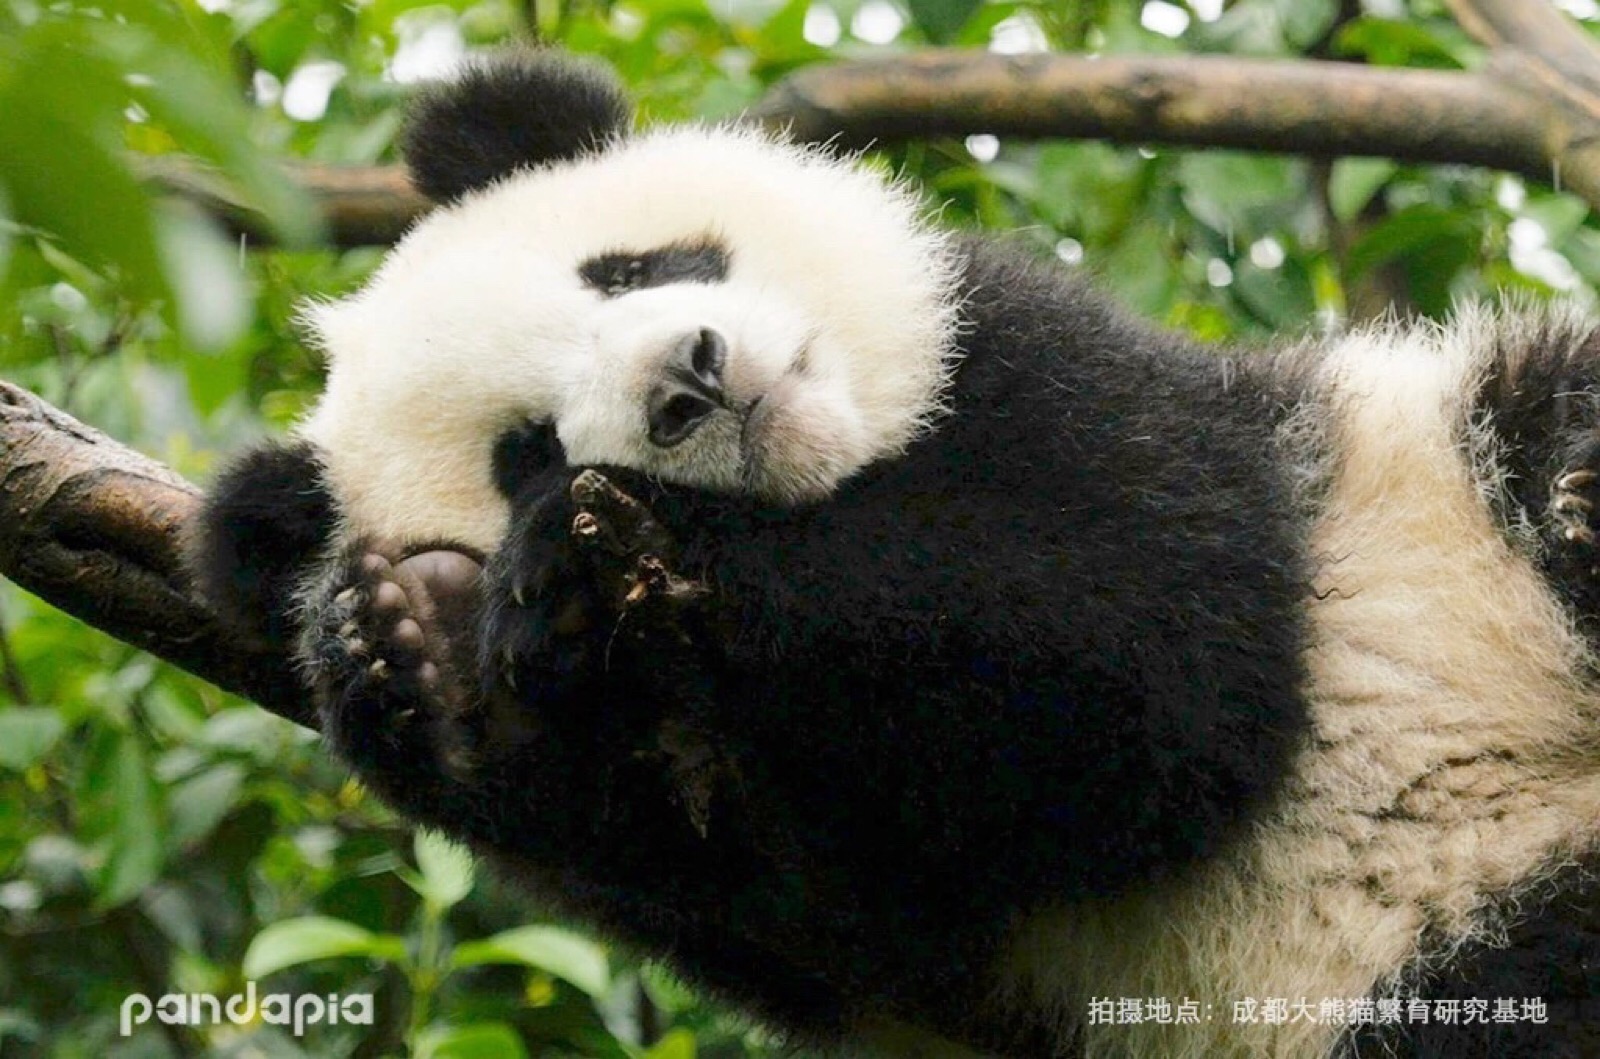 熊猫from pandapia 奇一的睡颜